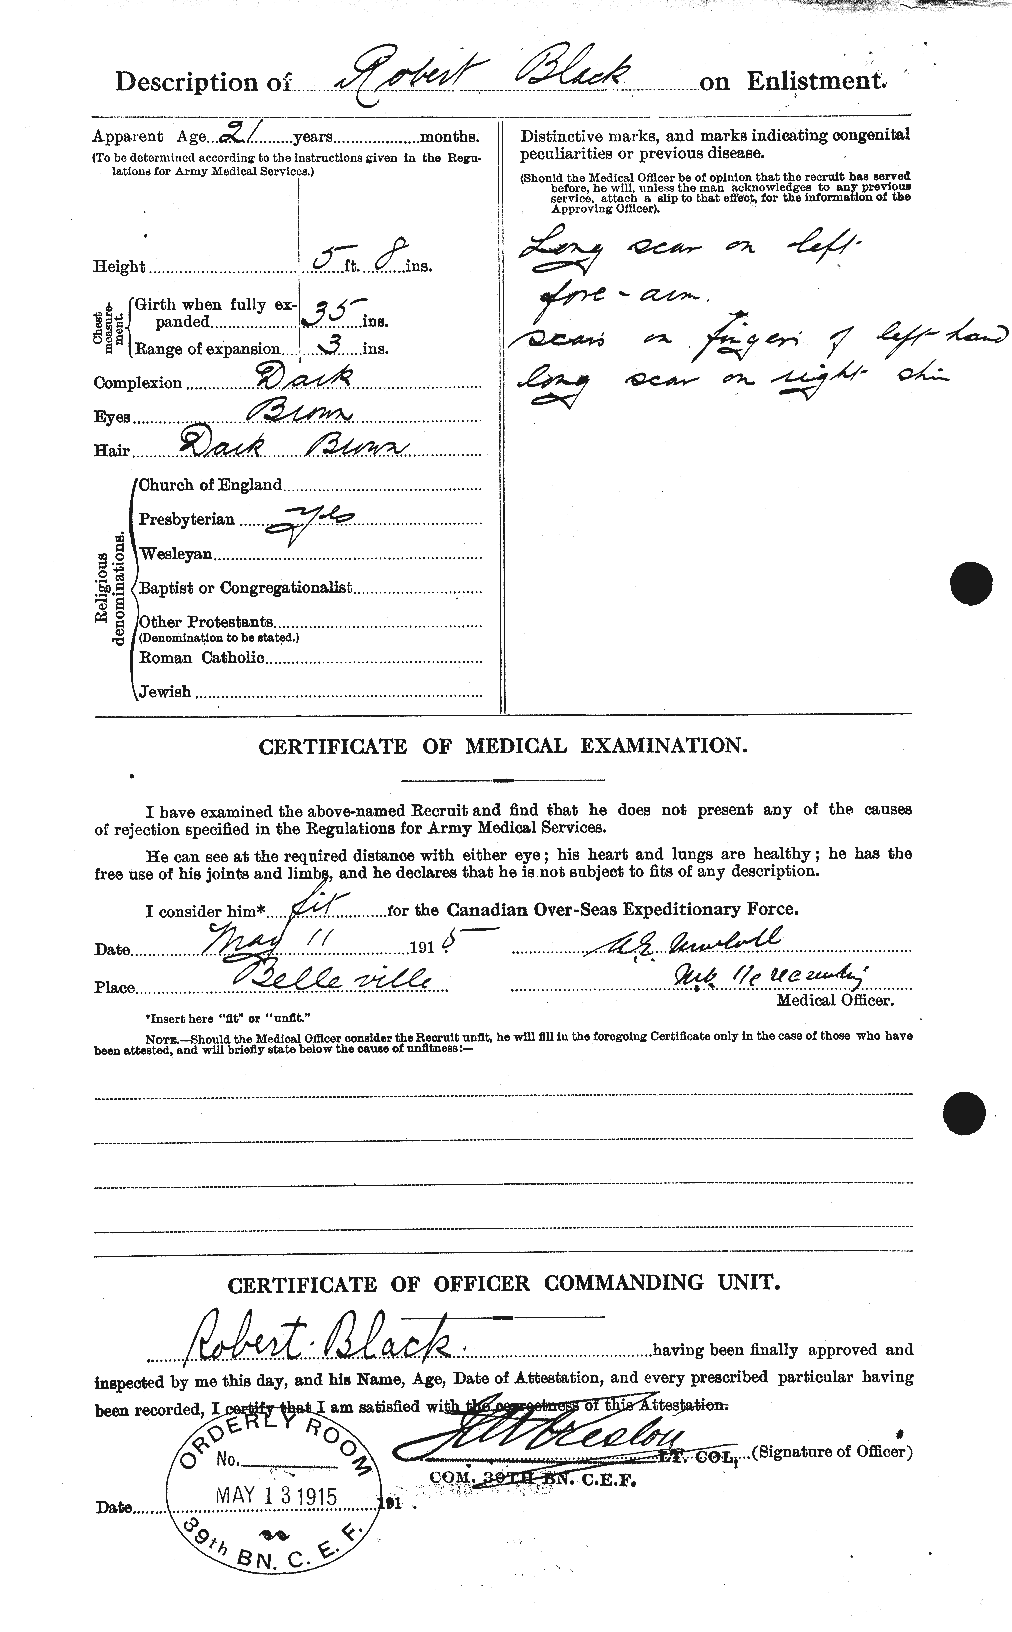 Dossiers du Personnel de la Première Guerre mondiale - CEC 247578b